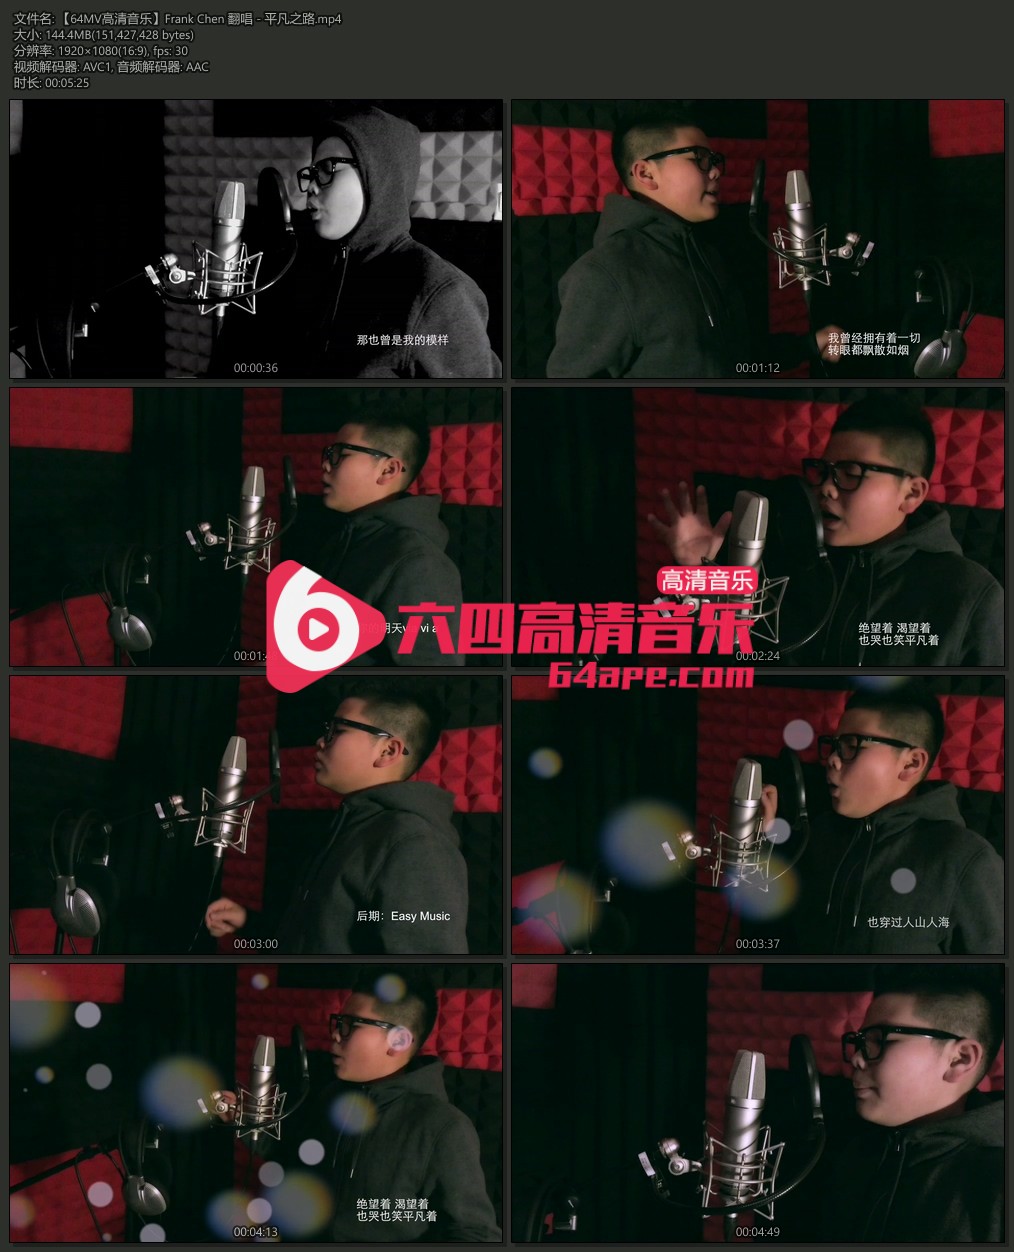 Frank Chen 翻唱 《平凡之路》 1080P